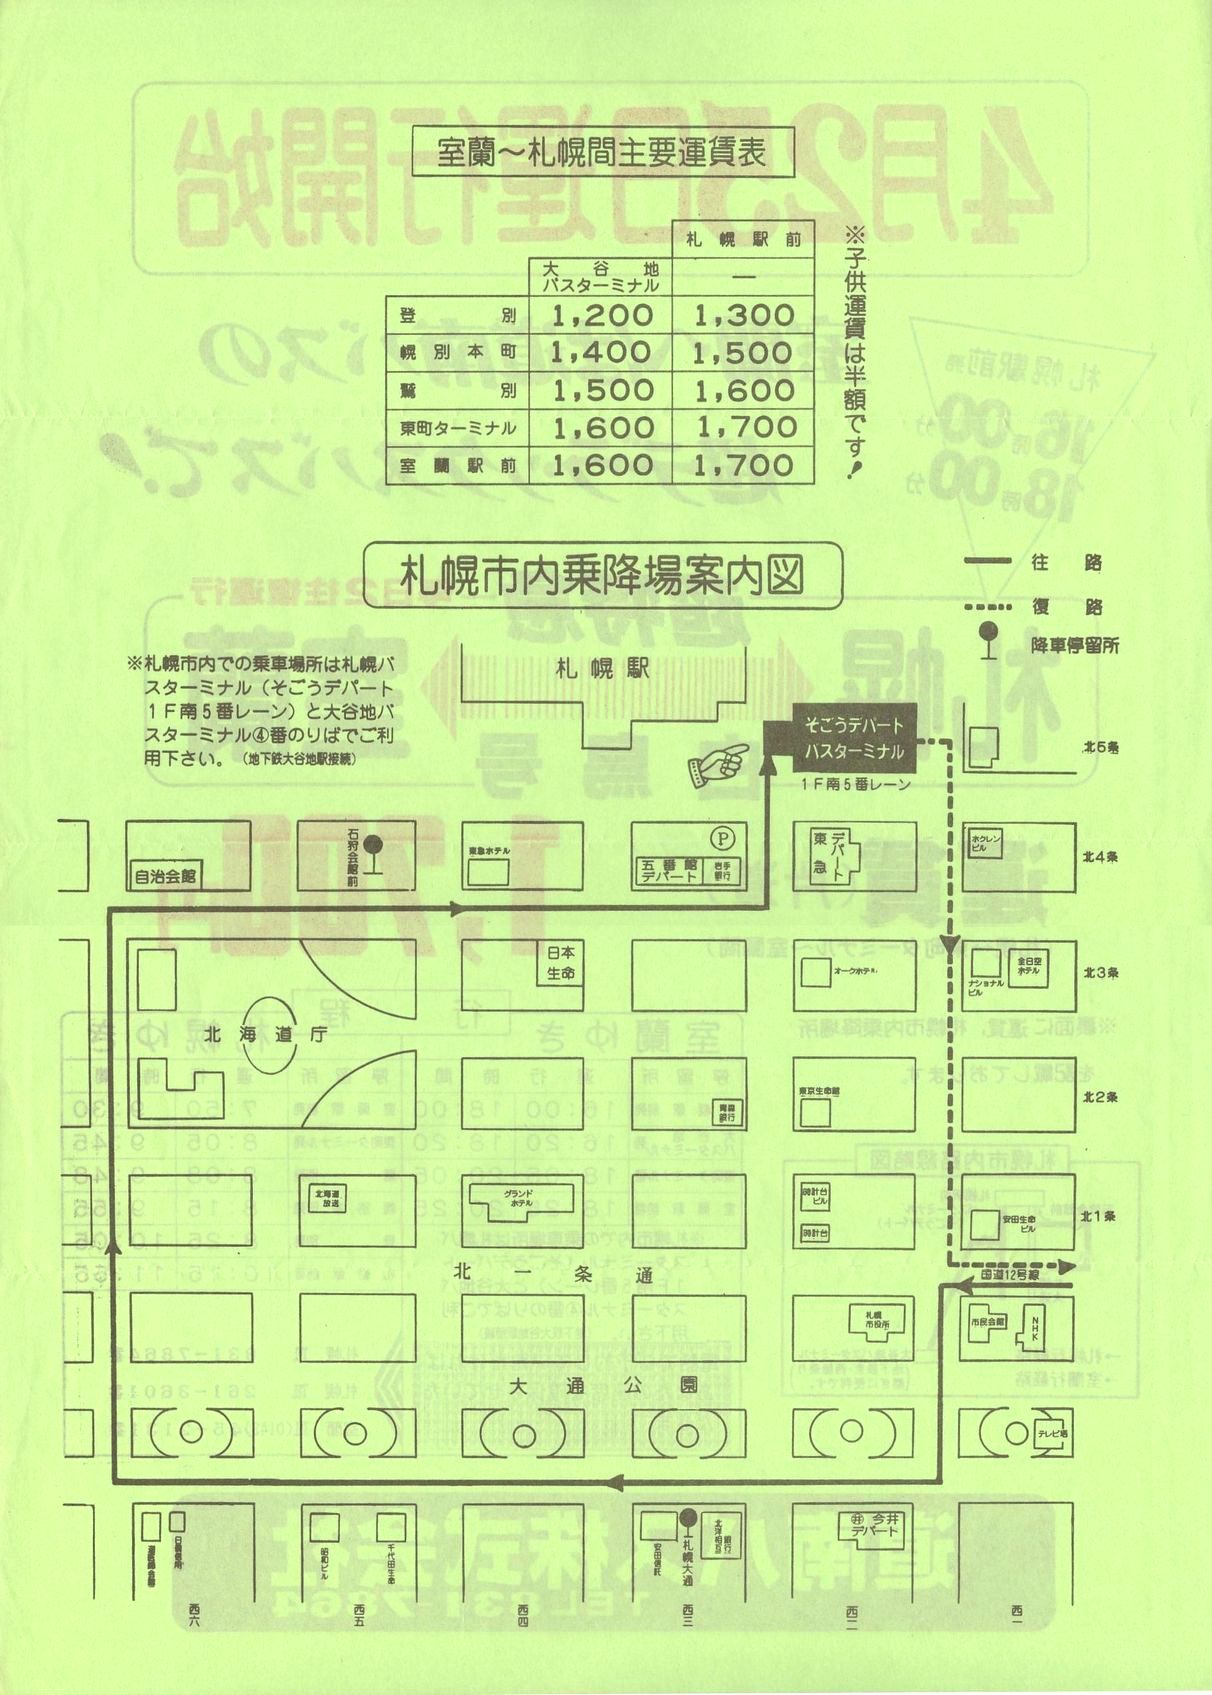 1984-04-25改正_道南バス_超特急白鳥号チラシ裏面